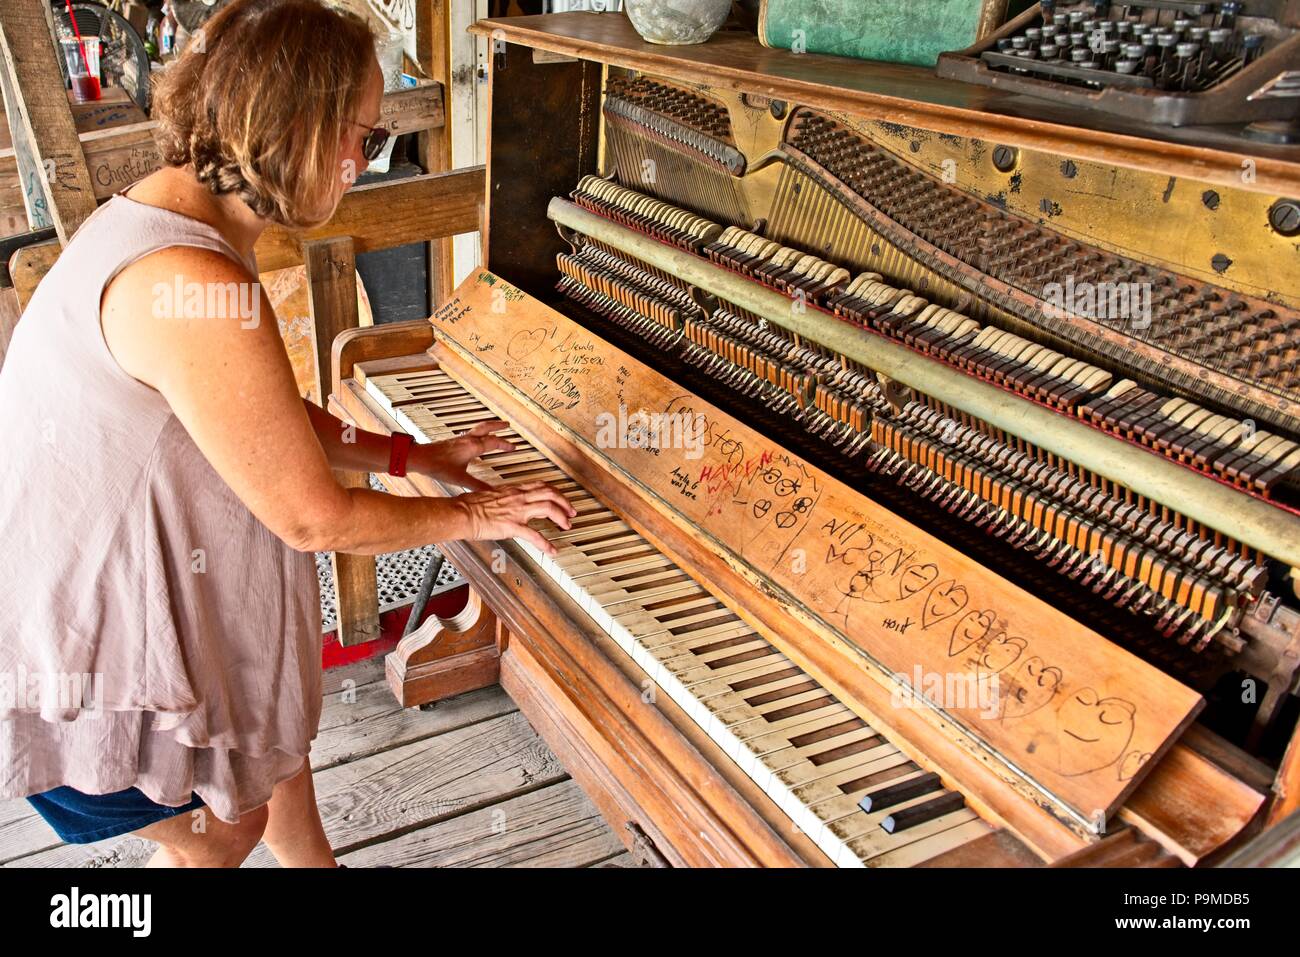 Senior Woman fait semblant de jouer du piano antique Photo Stock - Alamy